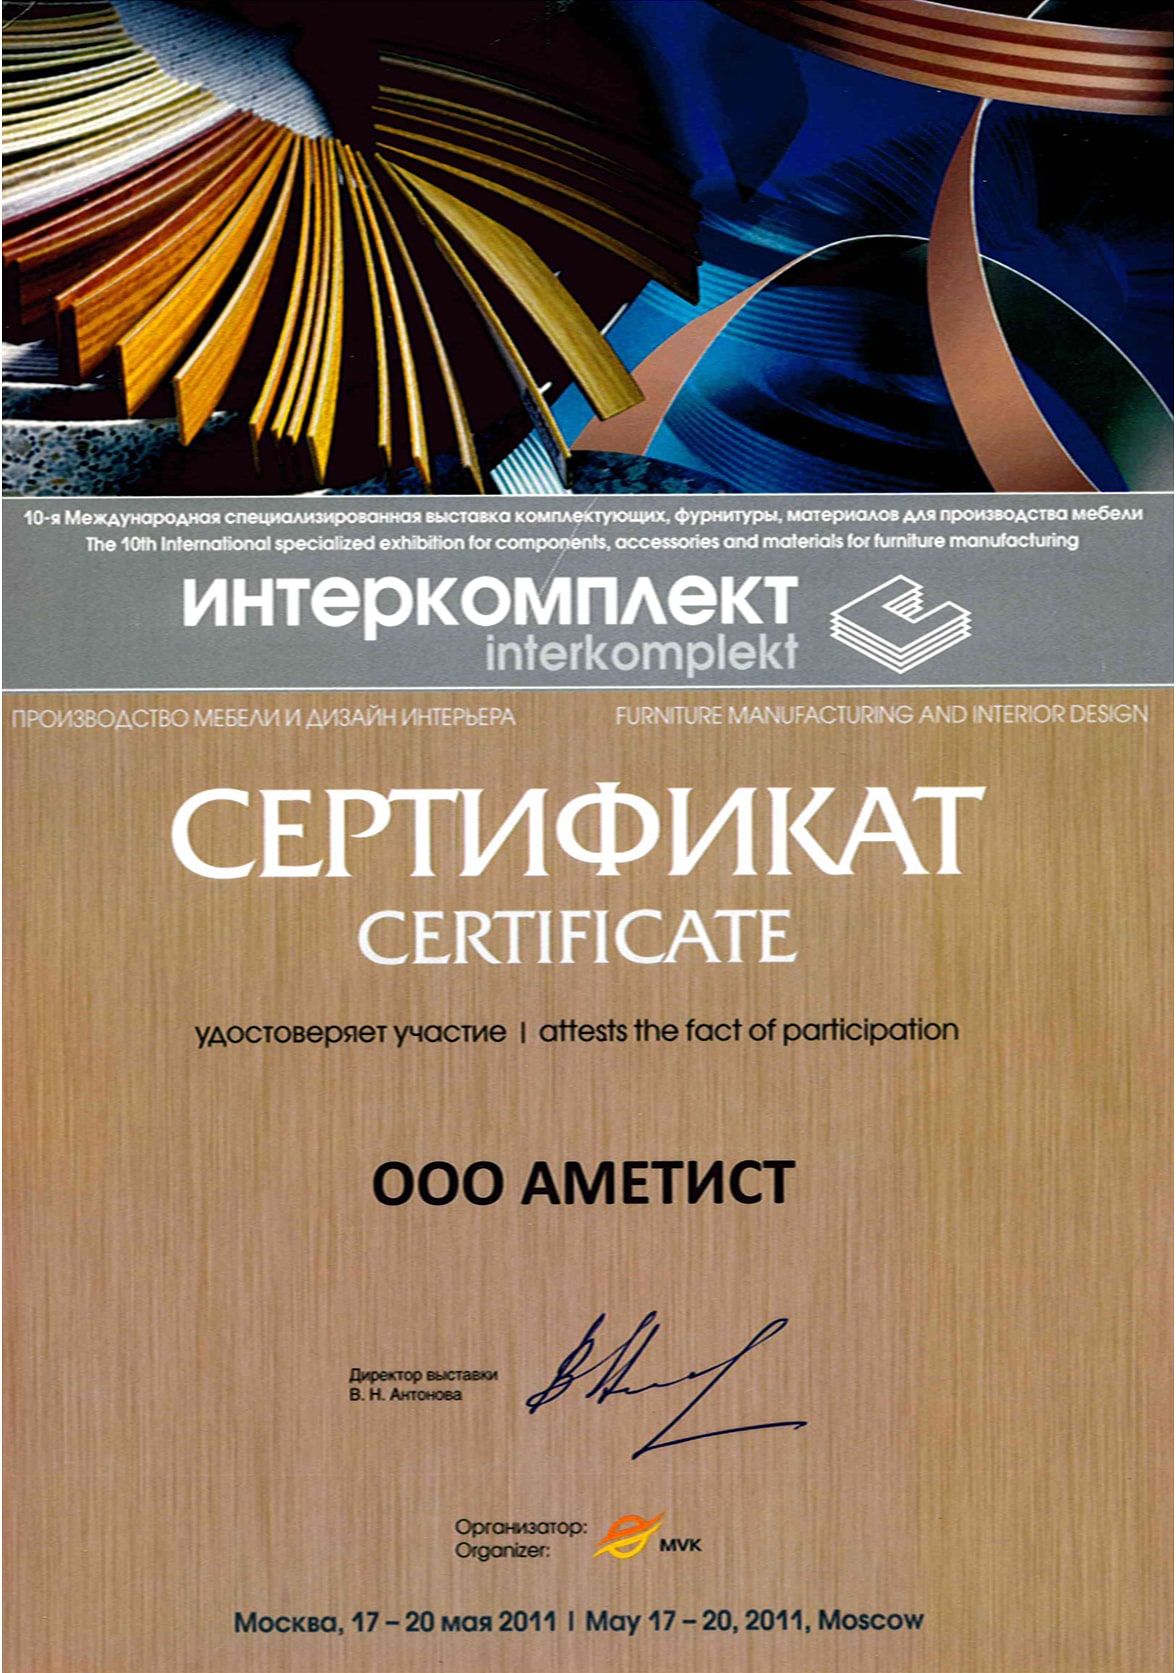 Сертификат (10-я Международная специализированная выставка комплектующих, фурнитуры, материалов для производства мебели «Интеркомплект»)